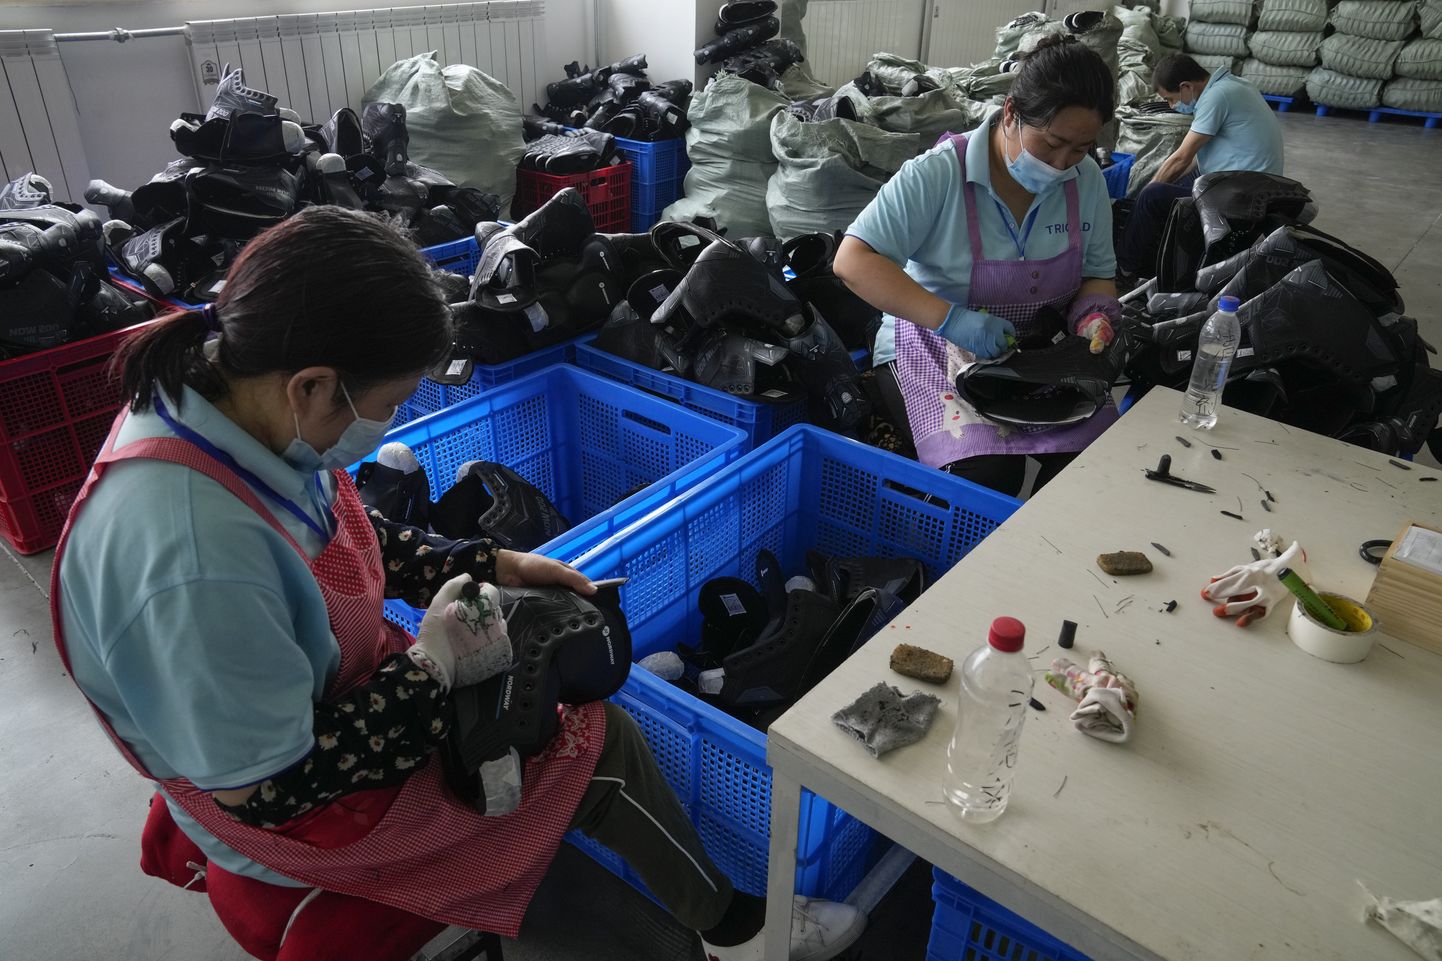 Hiinas tehases pannakse maske kokku